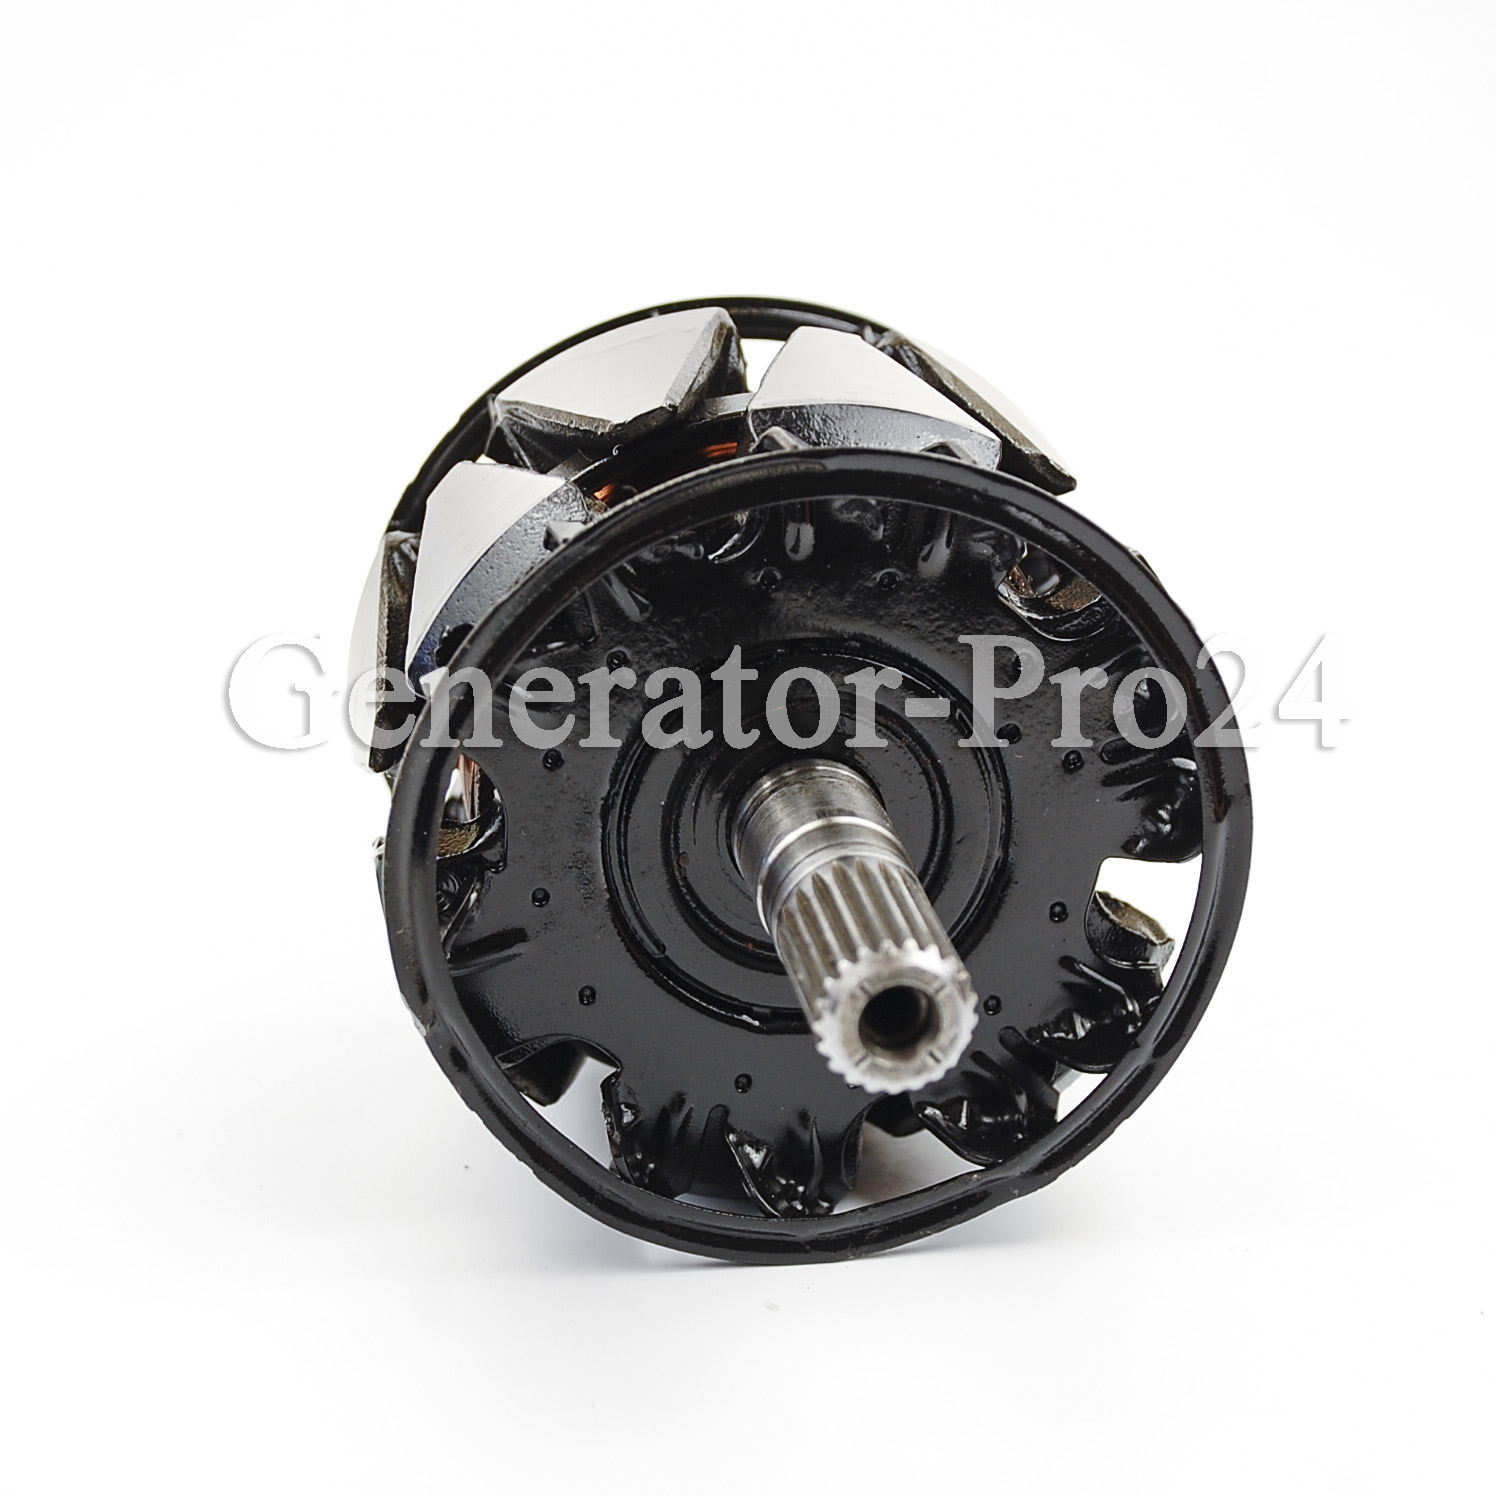 31101-MCA-S41  | Generator-Pro24  